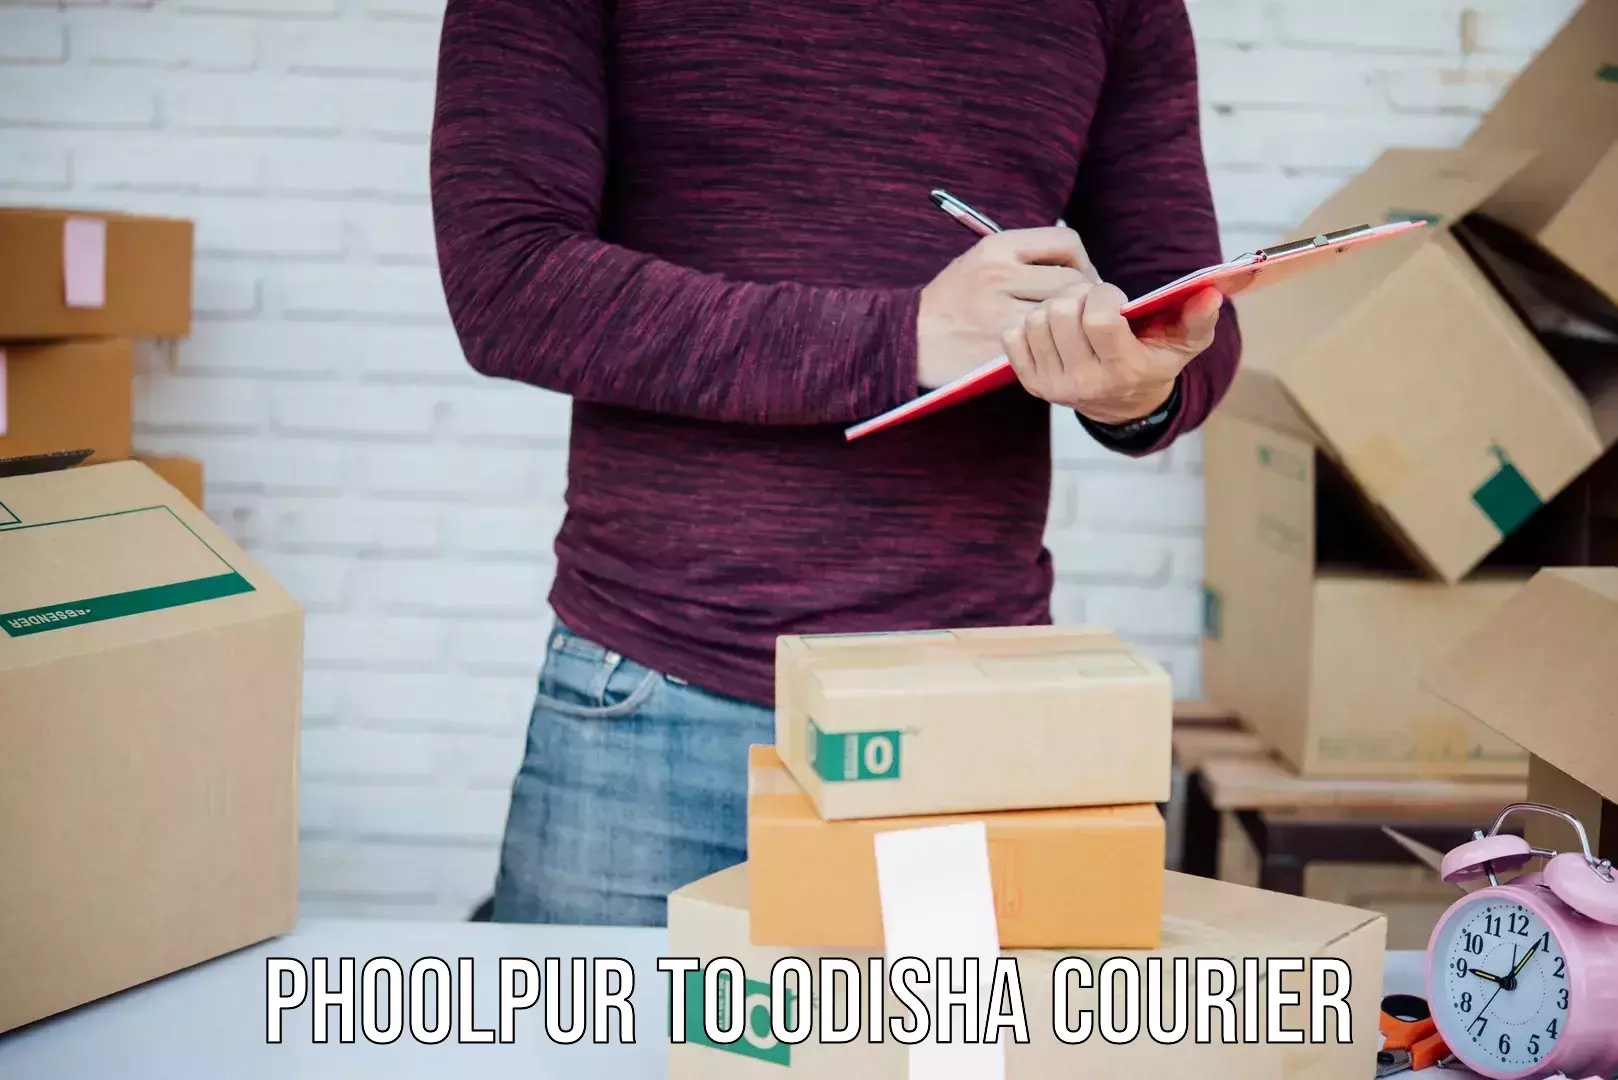 Efficient parcel service Phoolpur to Rourkela